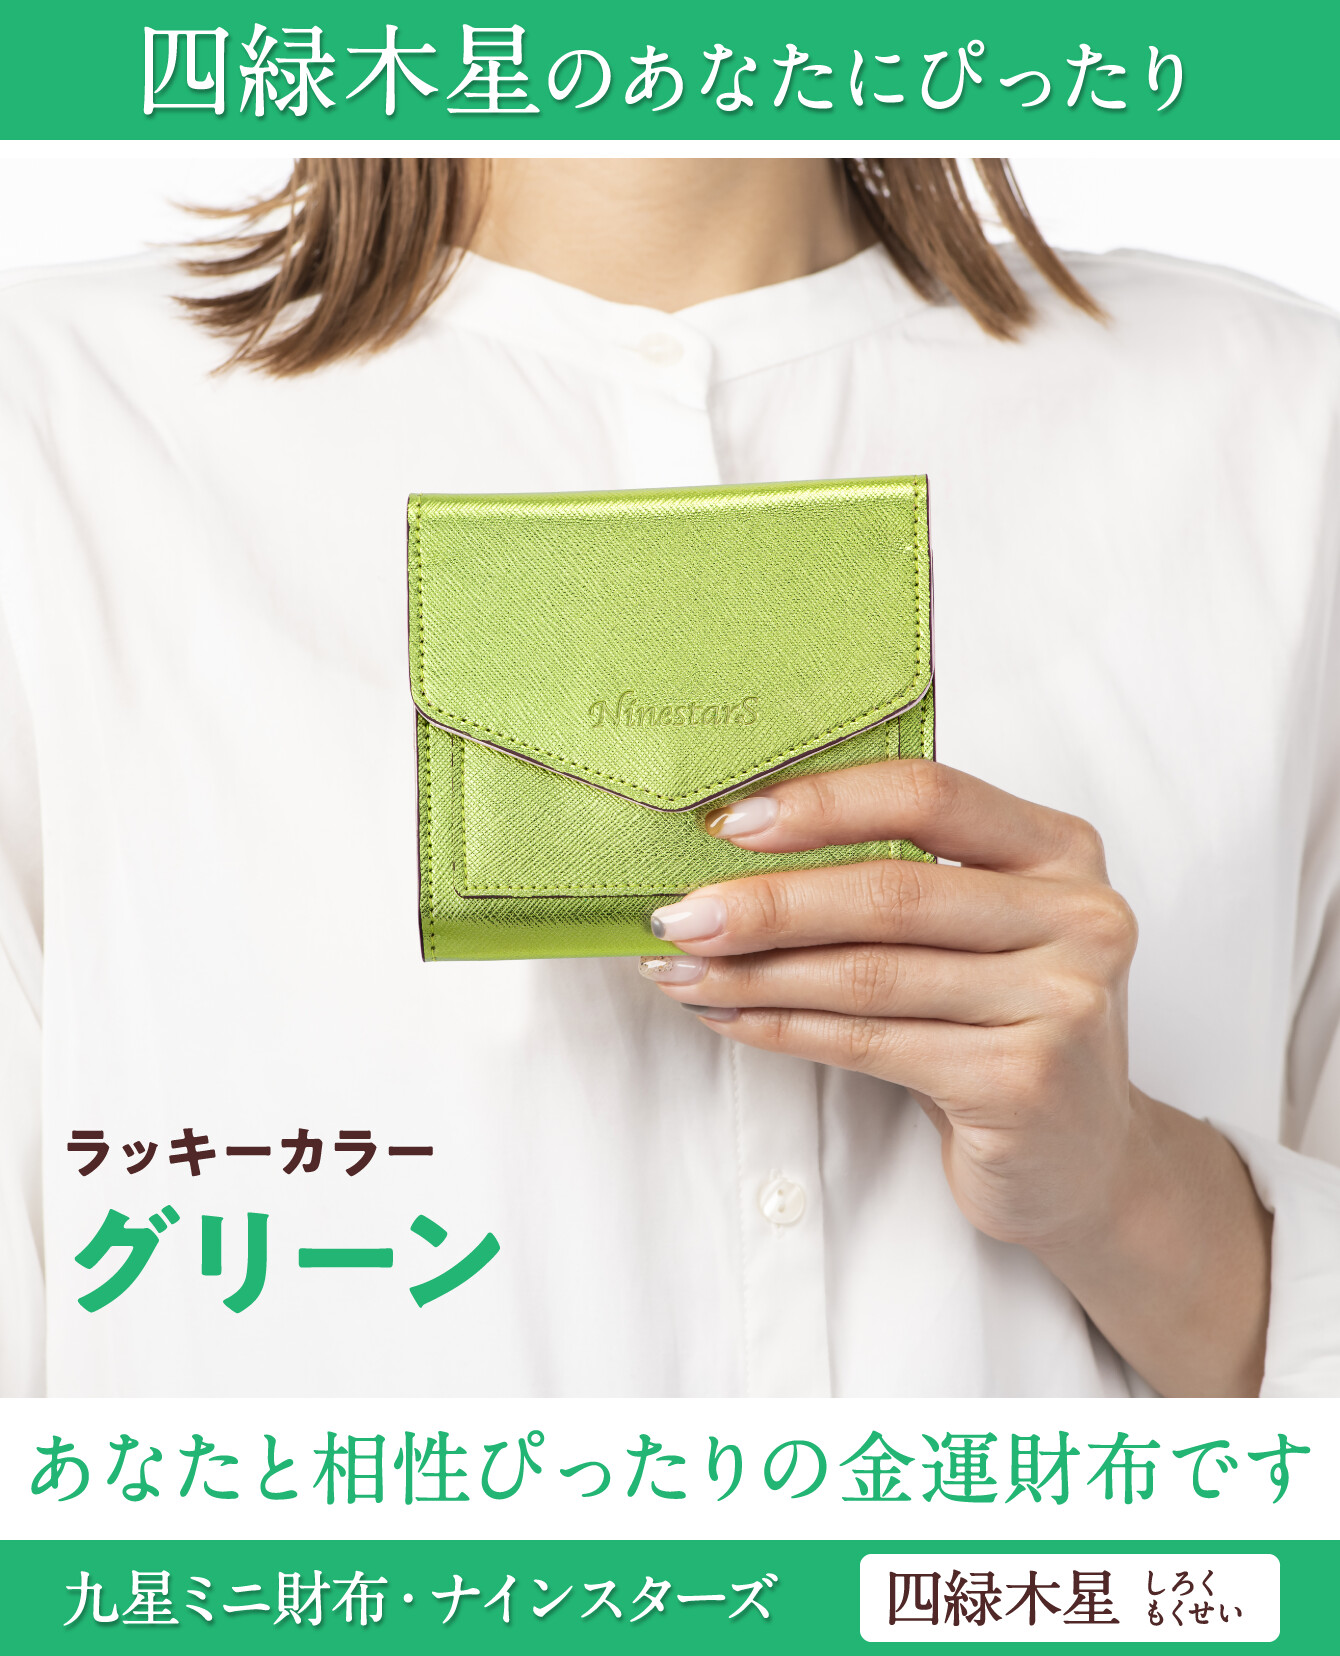 四緑木星のあなたにぴったり『九星ミニ財布・ナインスターズ 四緑木星 グリーン』ラッキーカラー：グリーン あなたと相性ぴったりの金運財布です